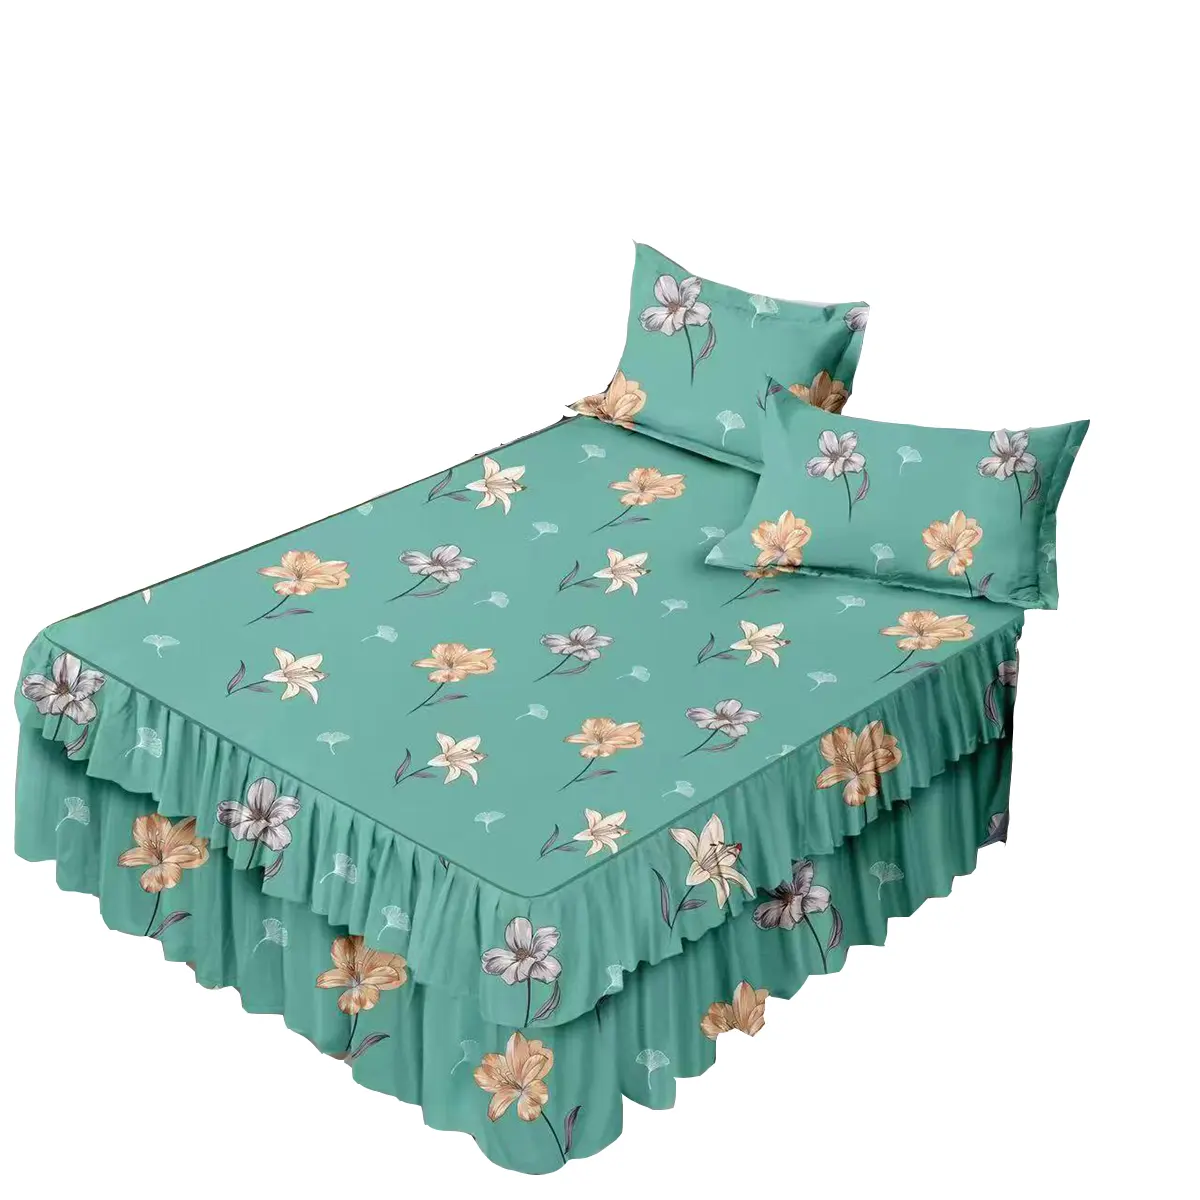 बिस्तर स्कर्ट फैक्टरी प्रत्यक्ष बिक्री कम कीमत नई बिस्तर शीट डिजाइन स्कर्ट के साथ बिस्तर शीट